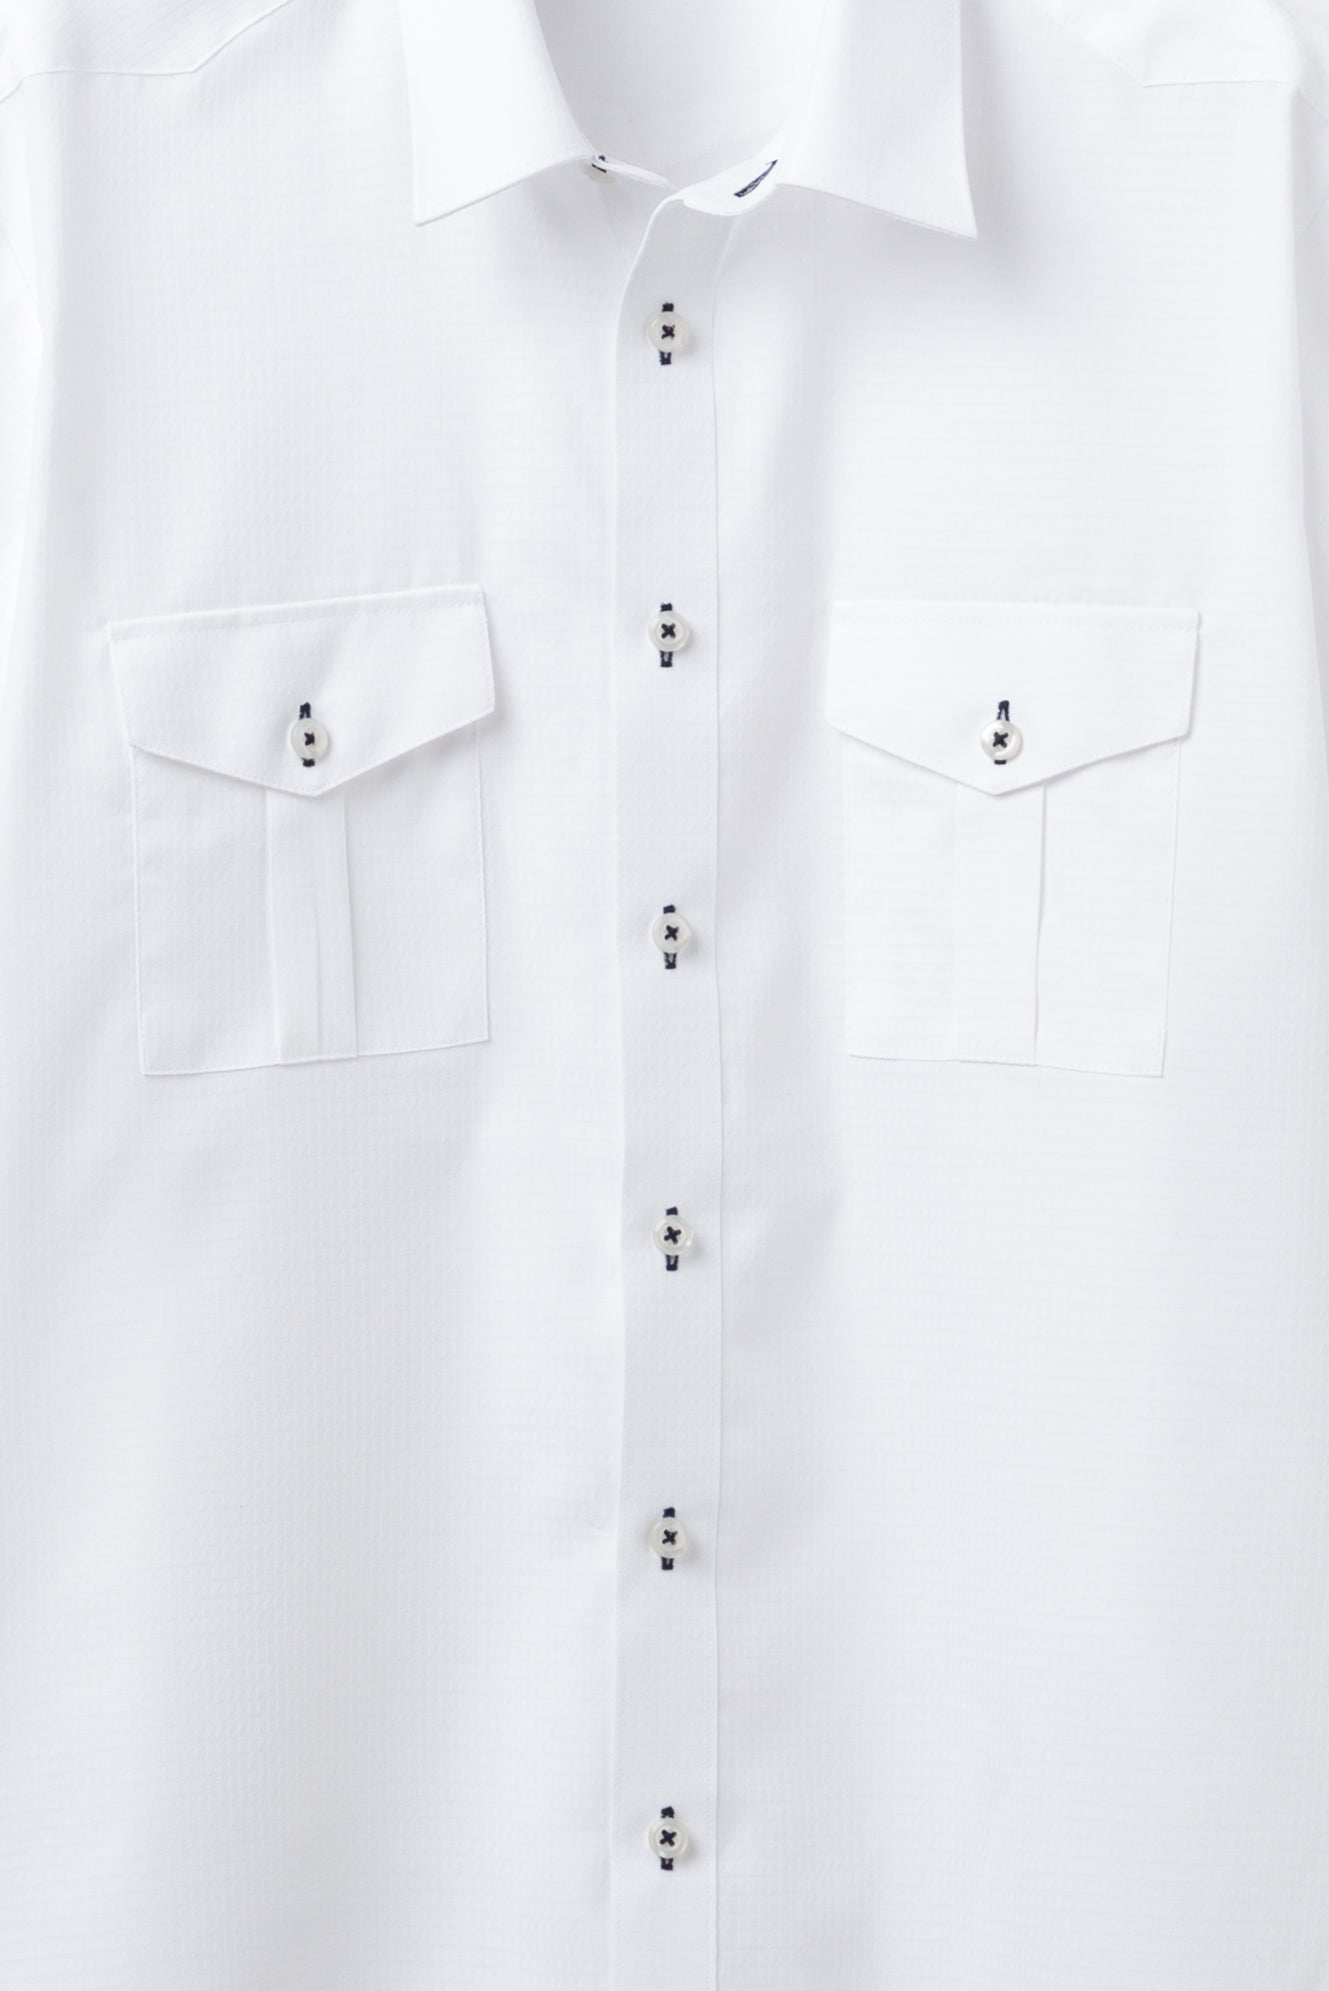 【半袖】ウエスタンヨークシャツ, 形態安定 裾出し兼用丈, 幾何学柄白ドビー